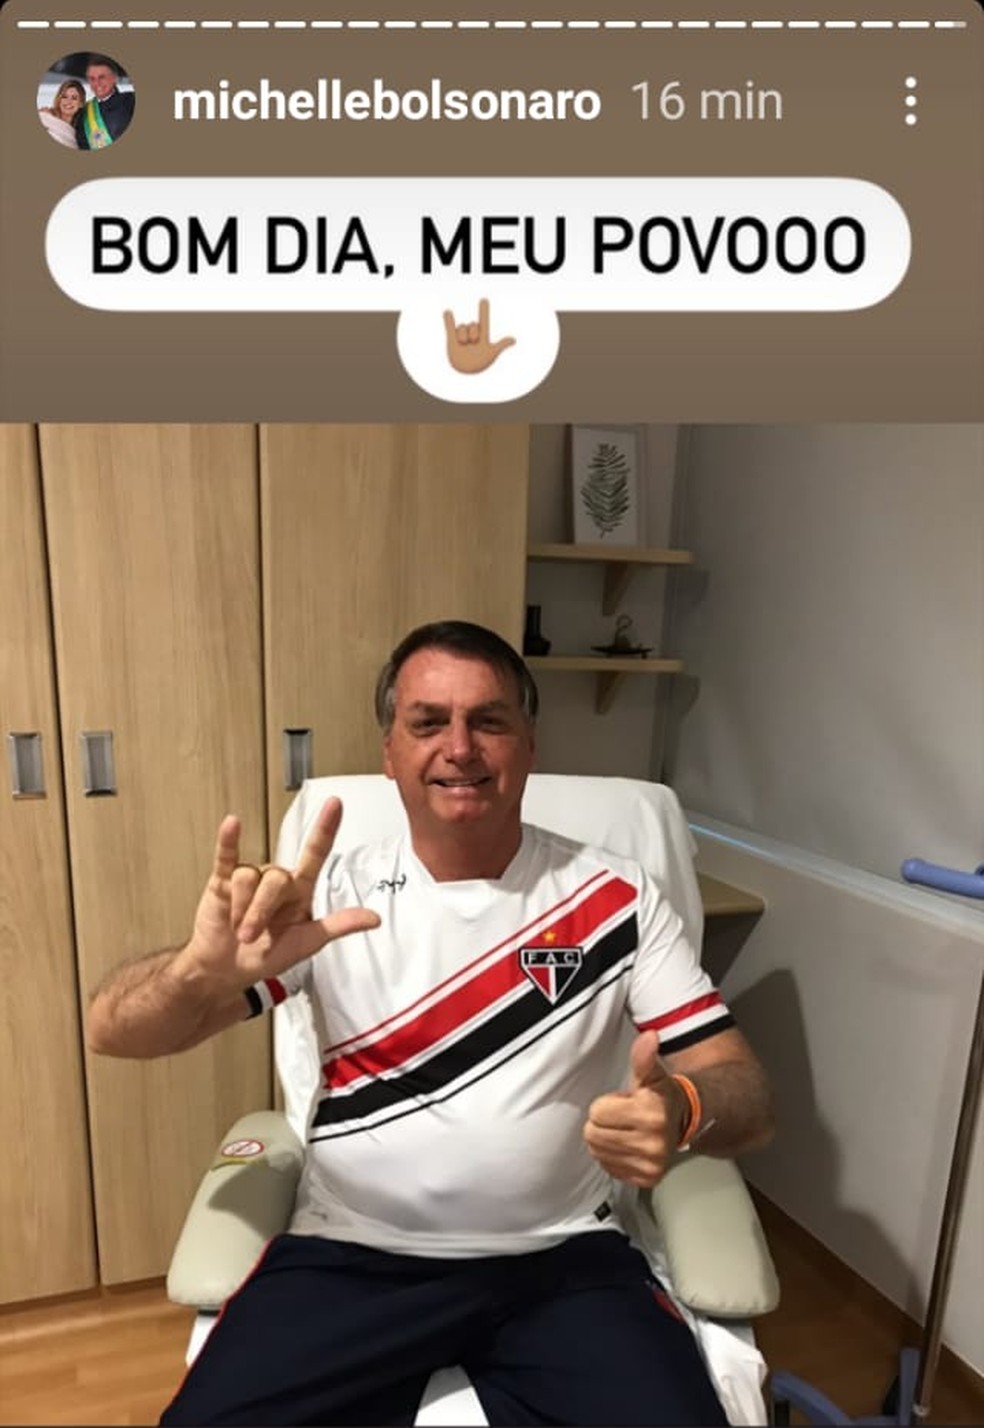 Bolsonaro tem 'ótima evolução clínica e sem complicações cirúrgicas' após procedimento na bexiga, diz boletim médico